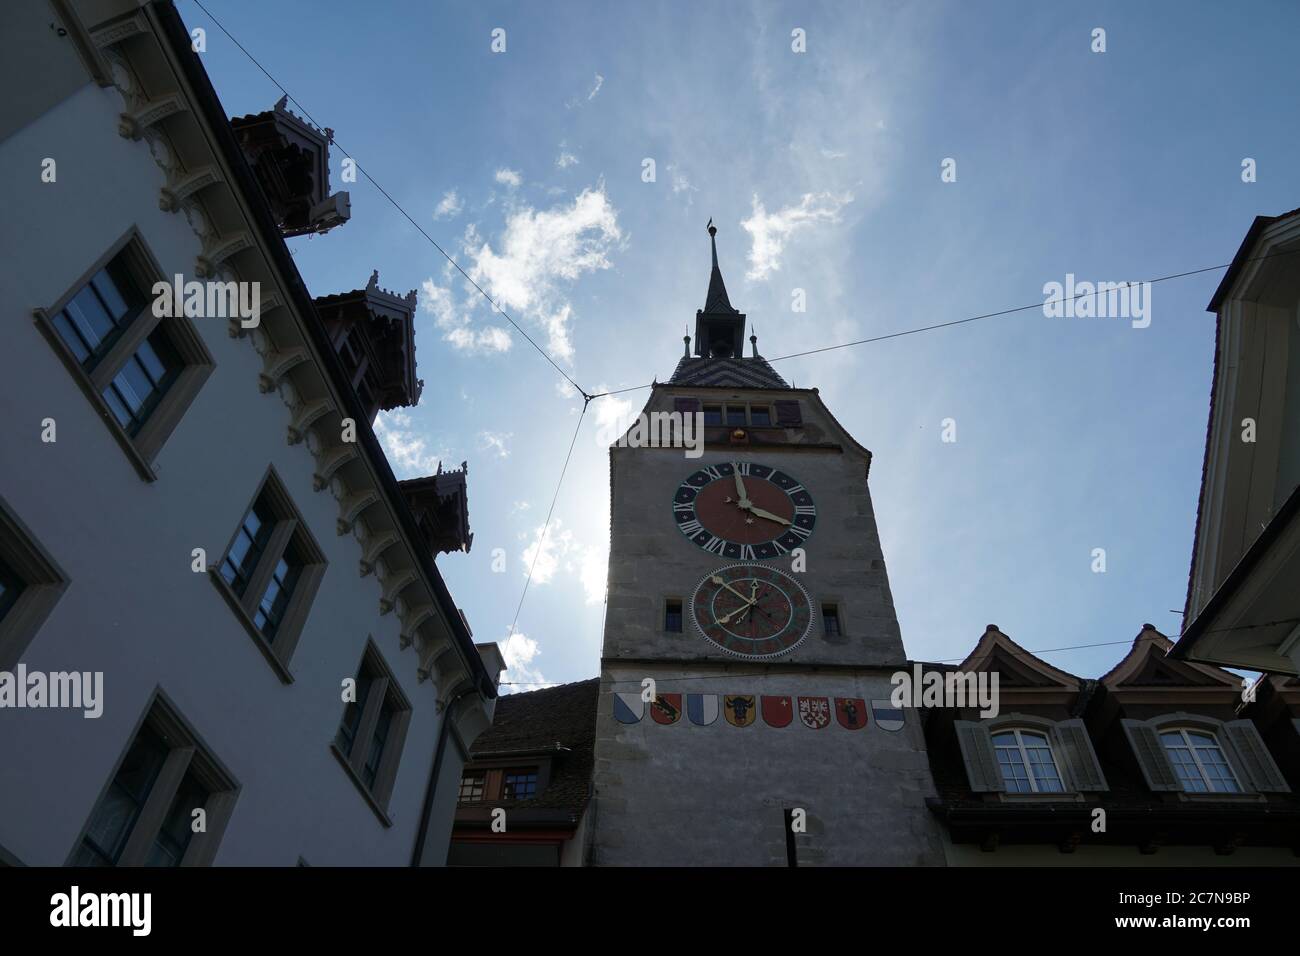 Zug / Schweiz 05 09 2020: Zuger Uhrturm in der oberen Perspektive im Kontext der umliegenden historischen Gebäude und Architektur. Stockfoto